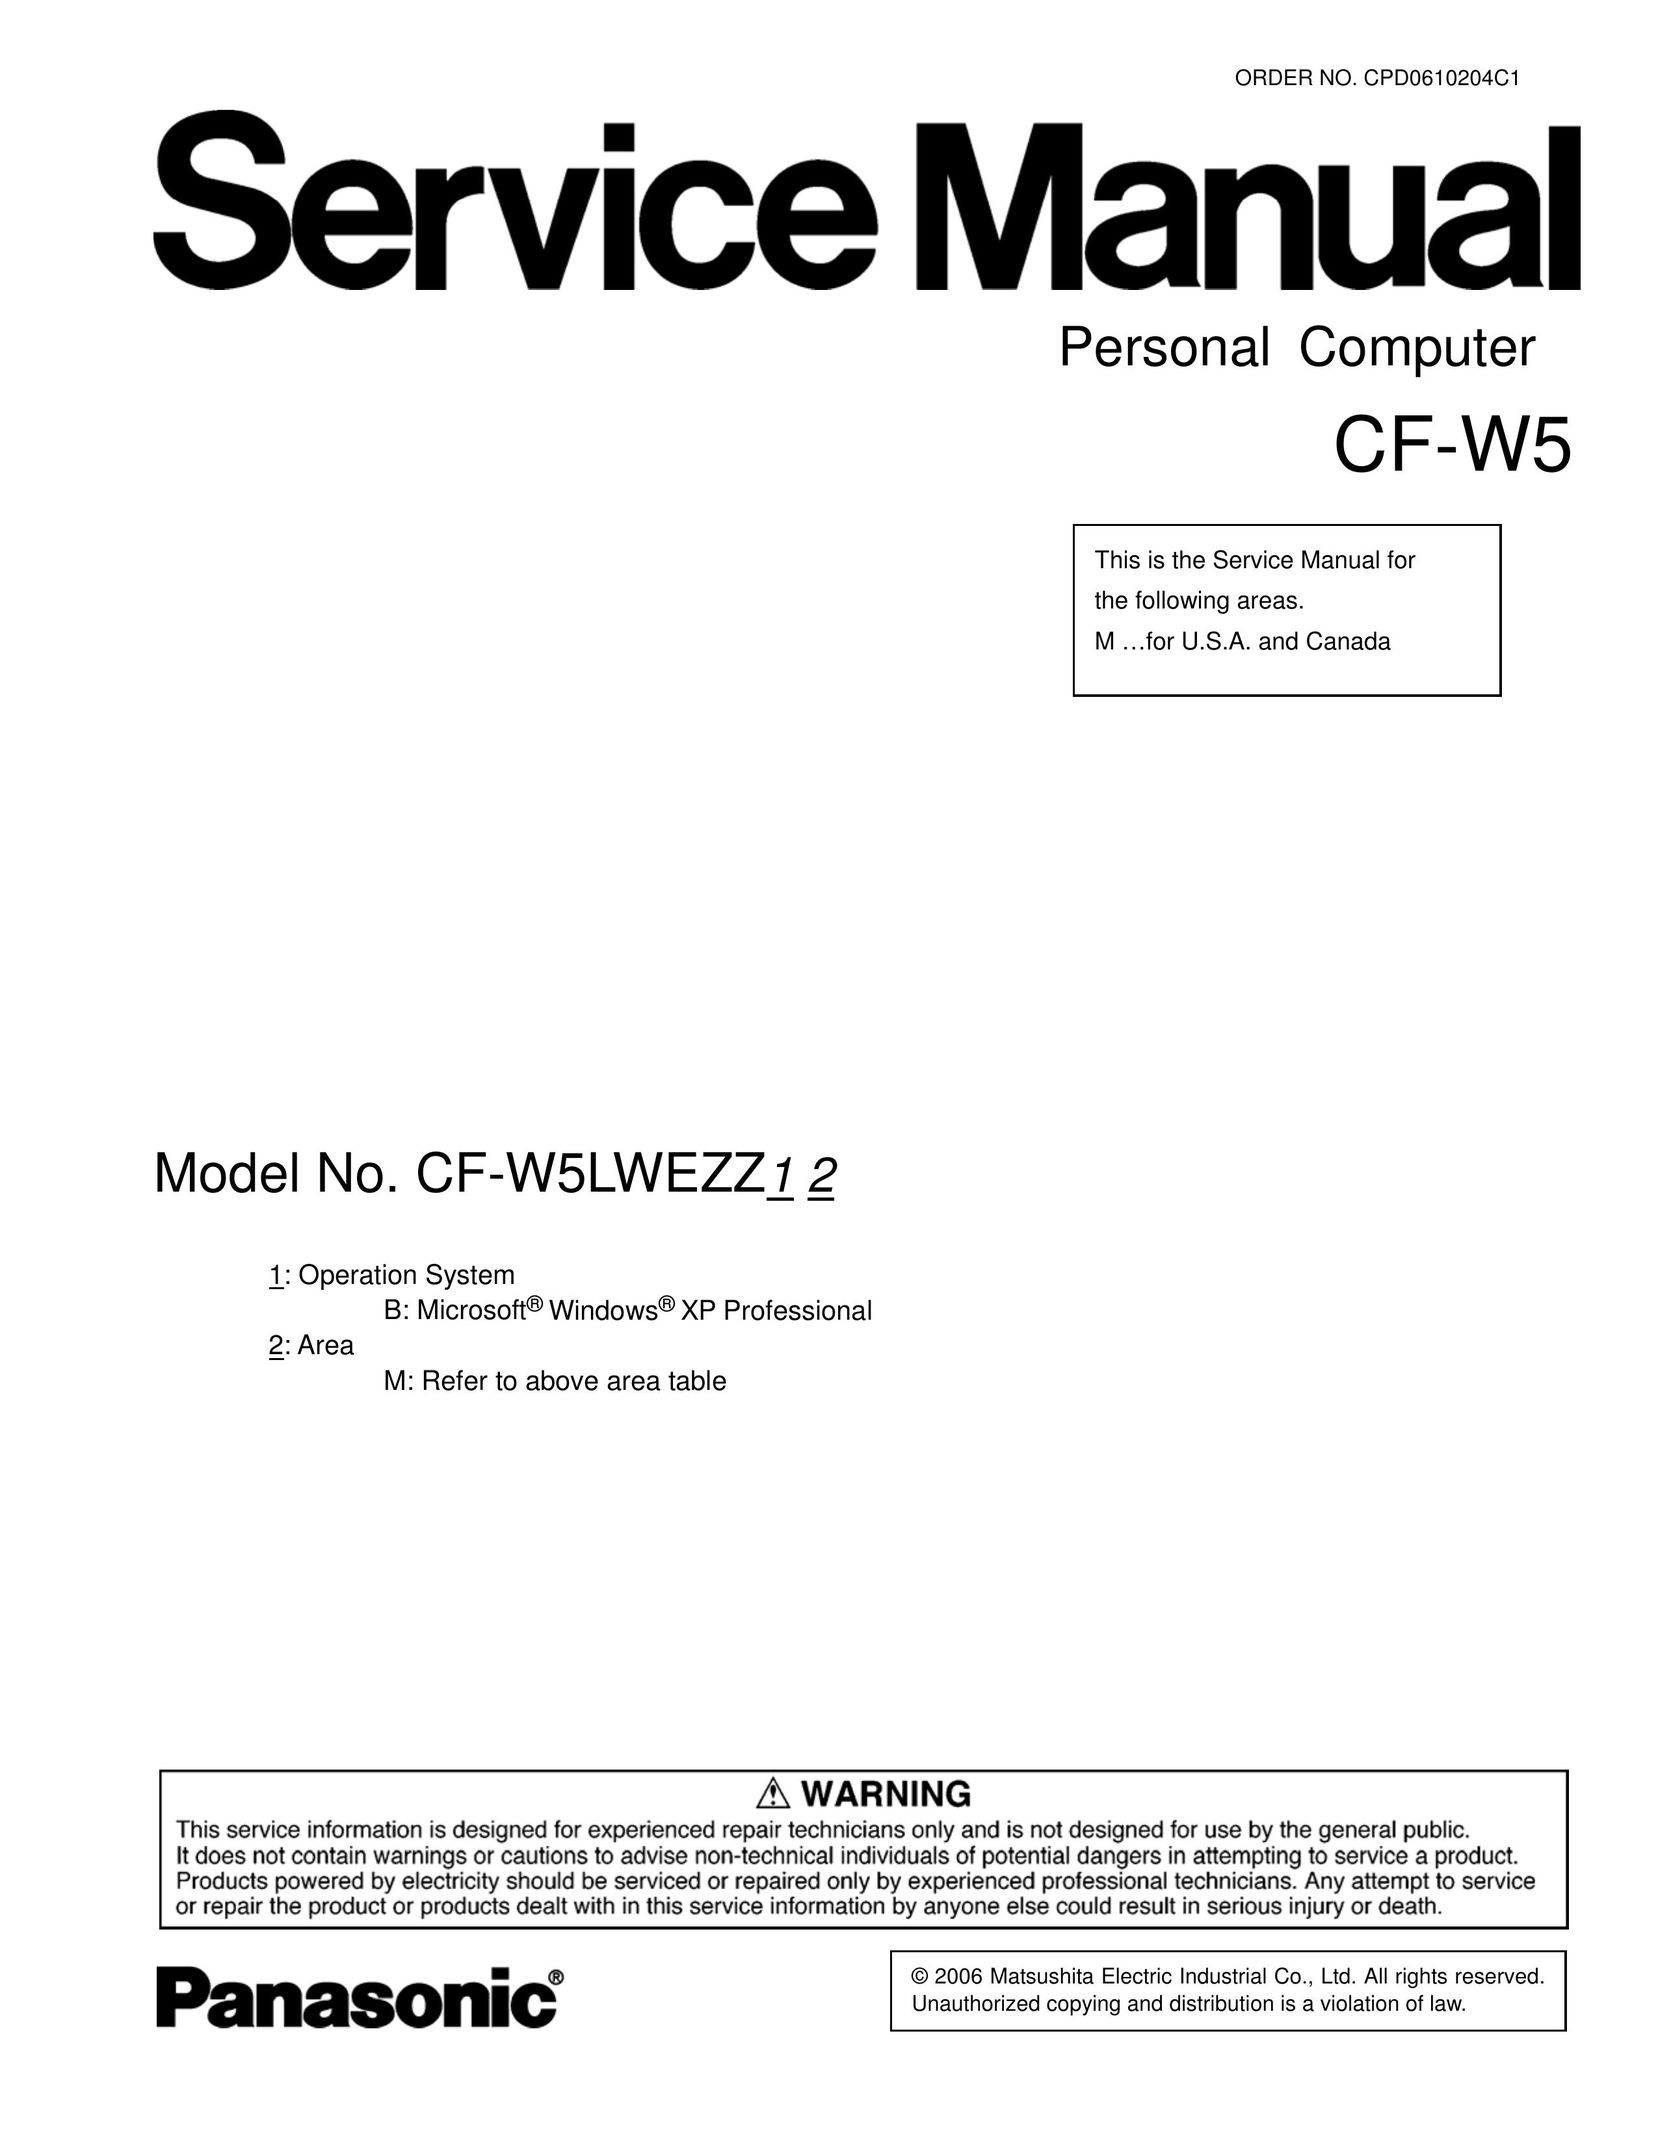 Matsushita CF-W5LWEZZ1 2 Laptop User Manual